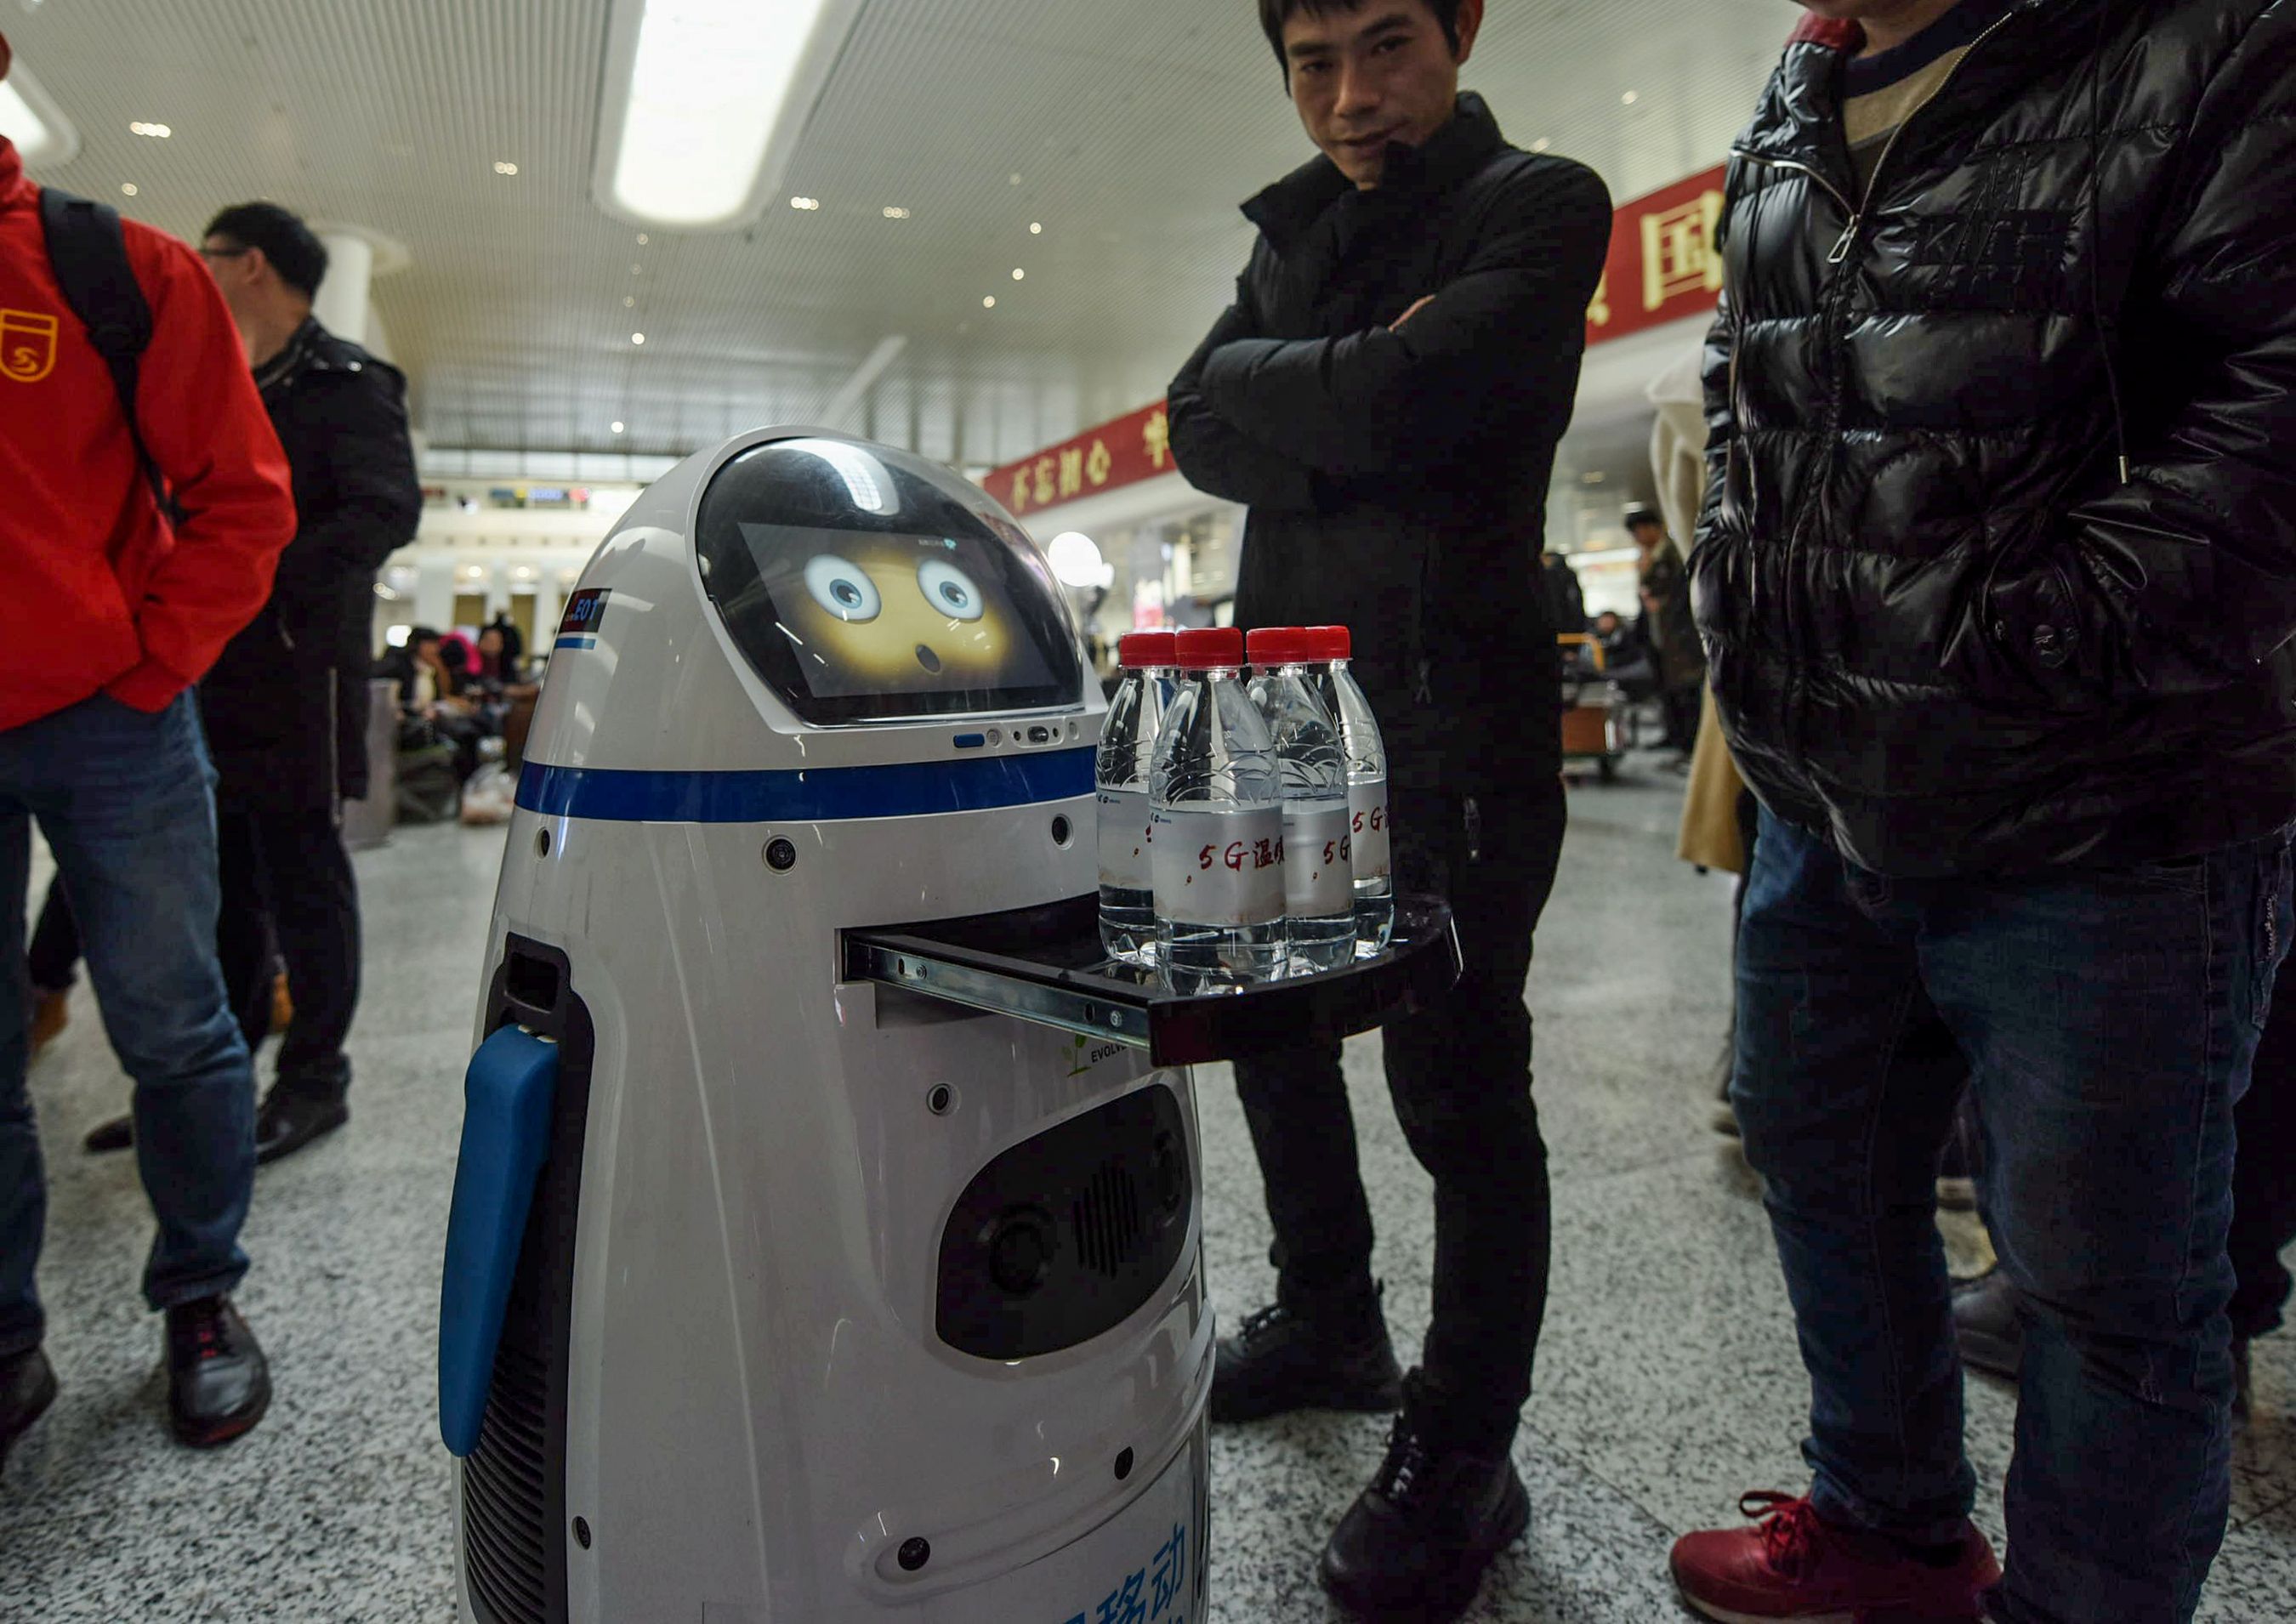 La llegada de la inteligencia artificial al mundo productivo puede suponer amenazas laborales para los trabajadores. (Foto Prensa Libre: AFP)